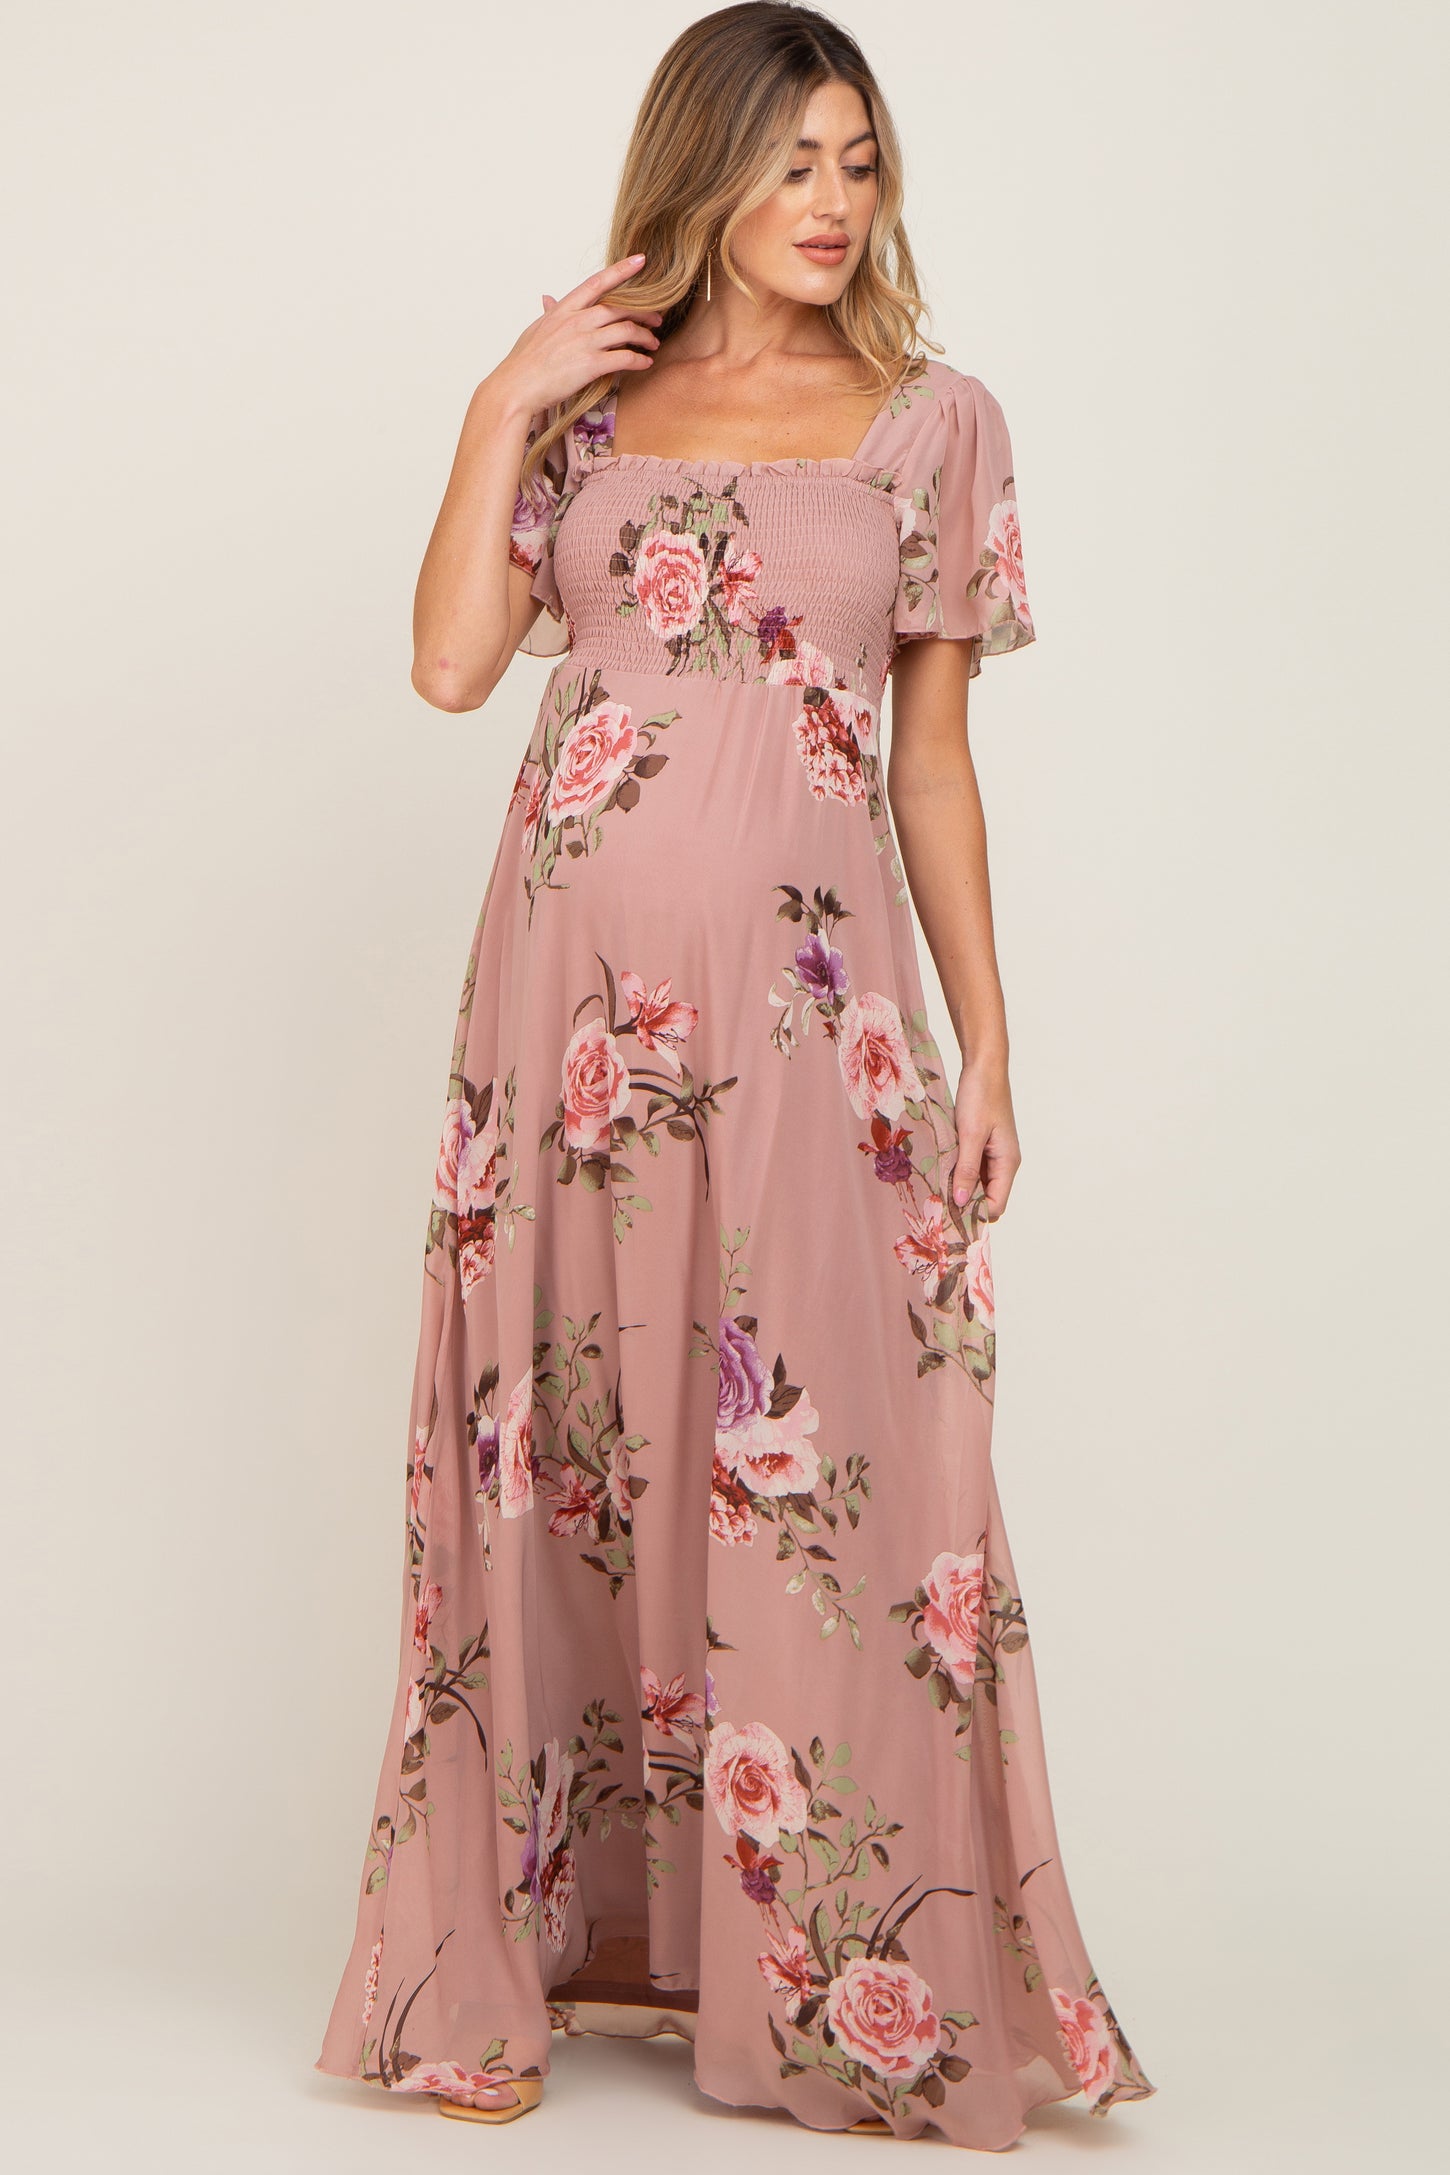 Mauve Floral Chiffon Smocked Maternity Maxi Dress– PinkBlush